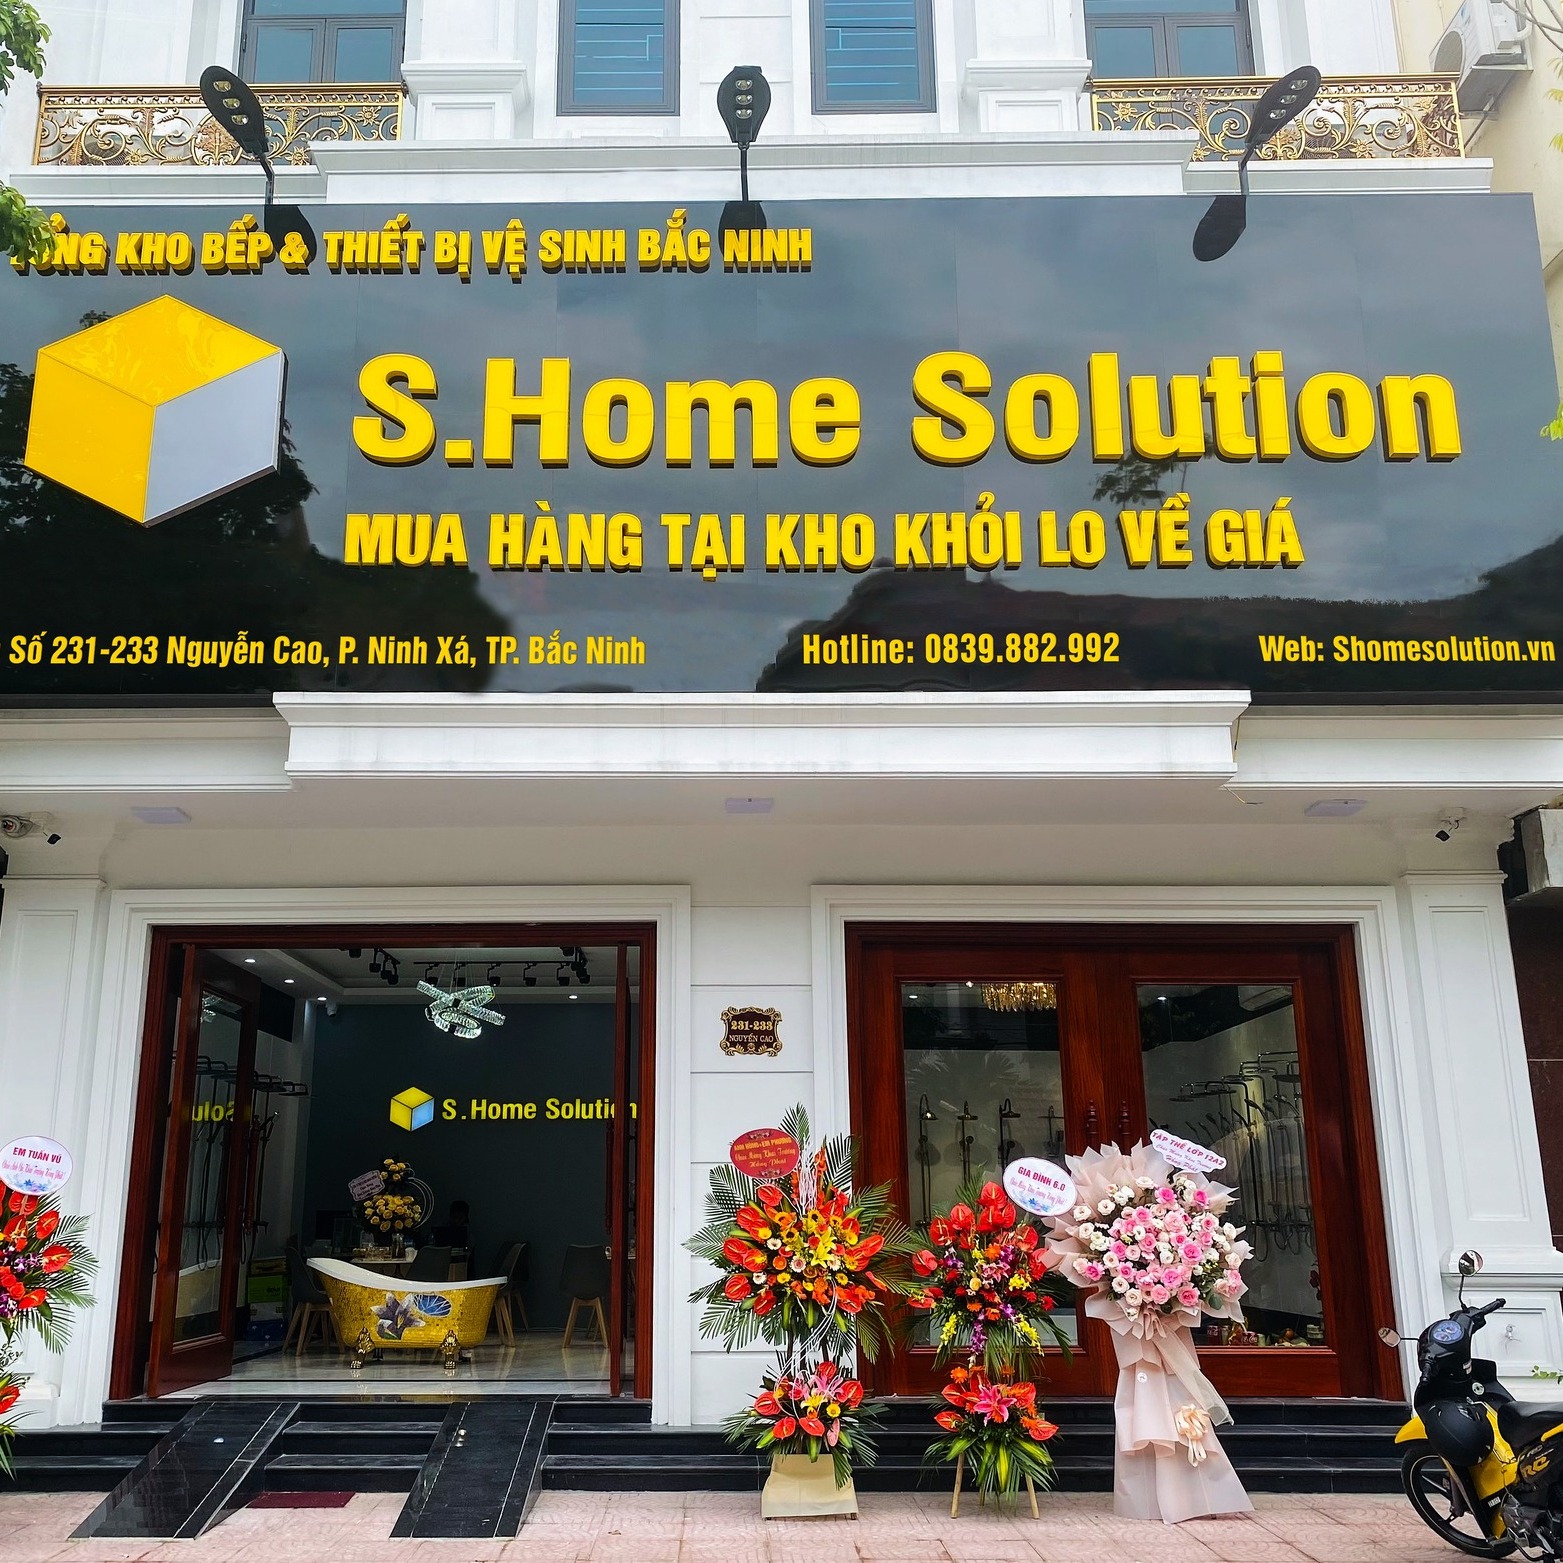 S.Home Solution - Showroom thiết bị vệ sinh Bắc Ninh chính hãng